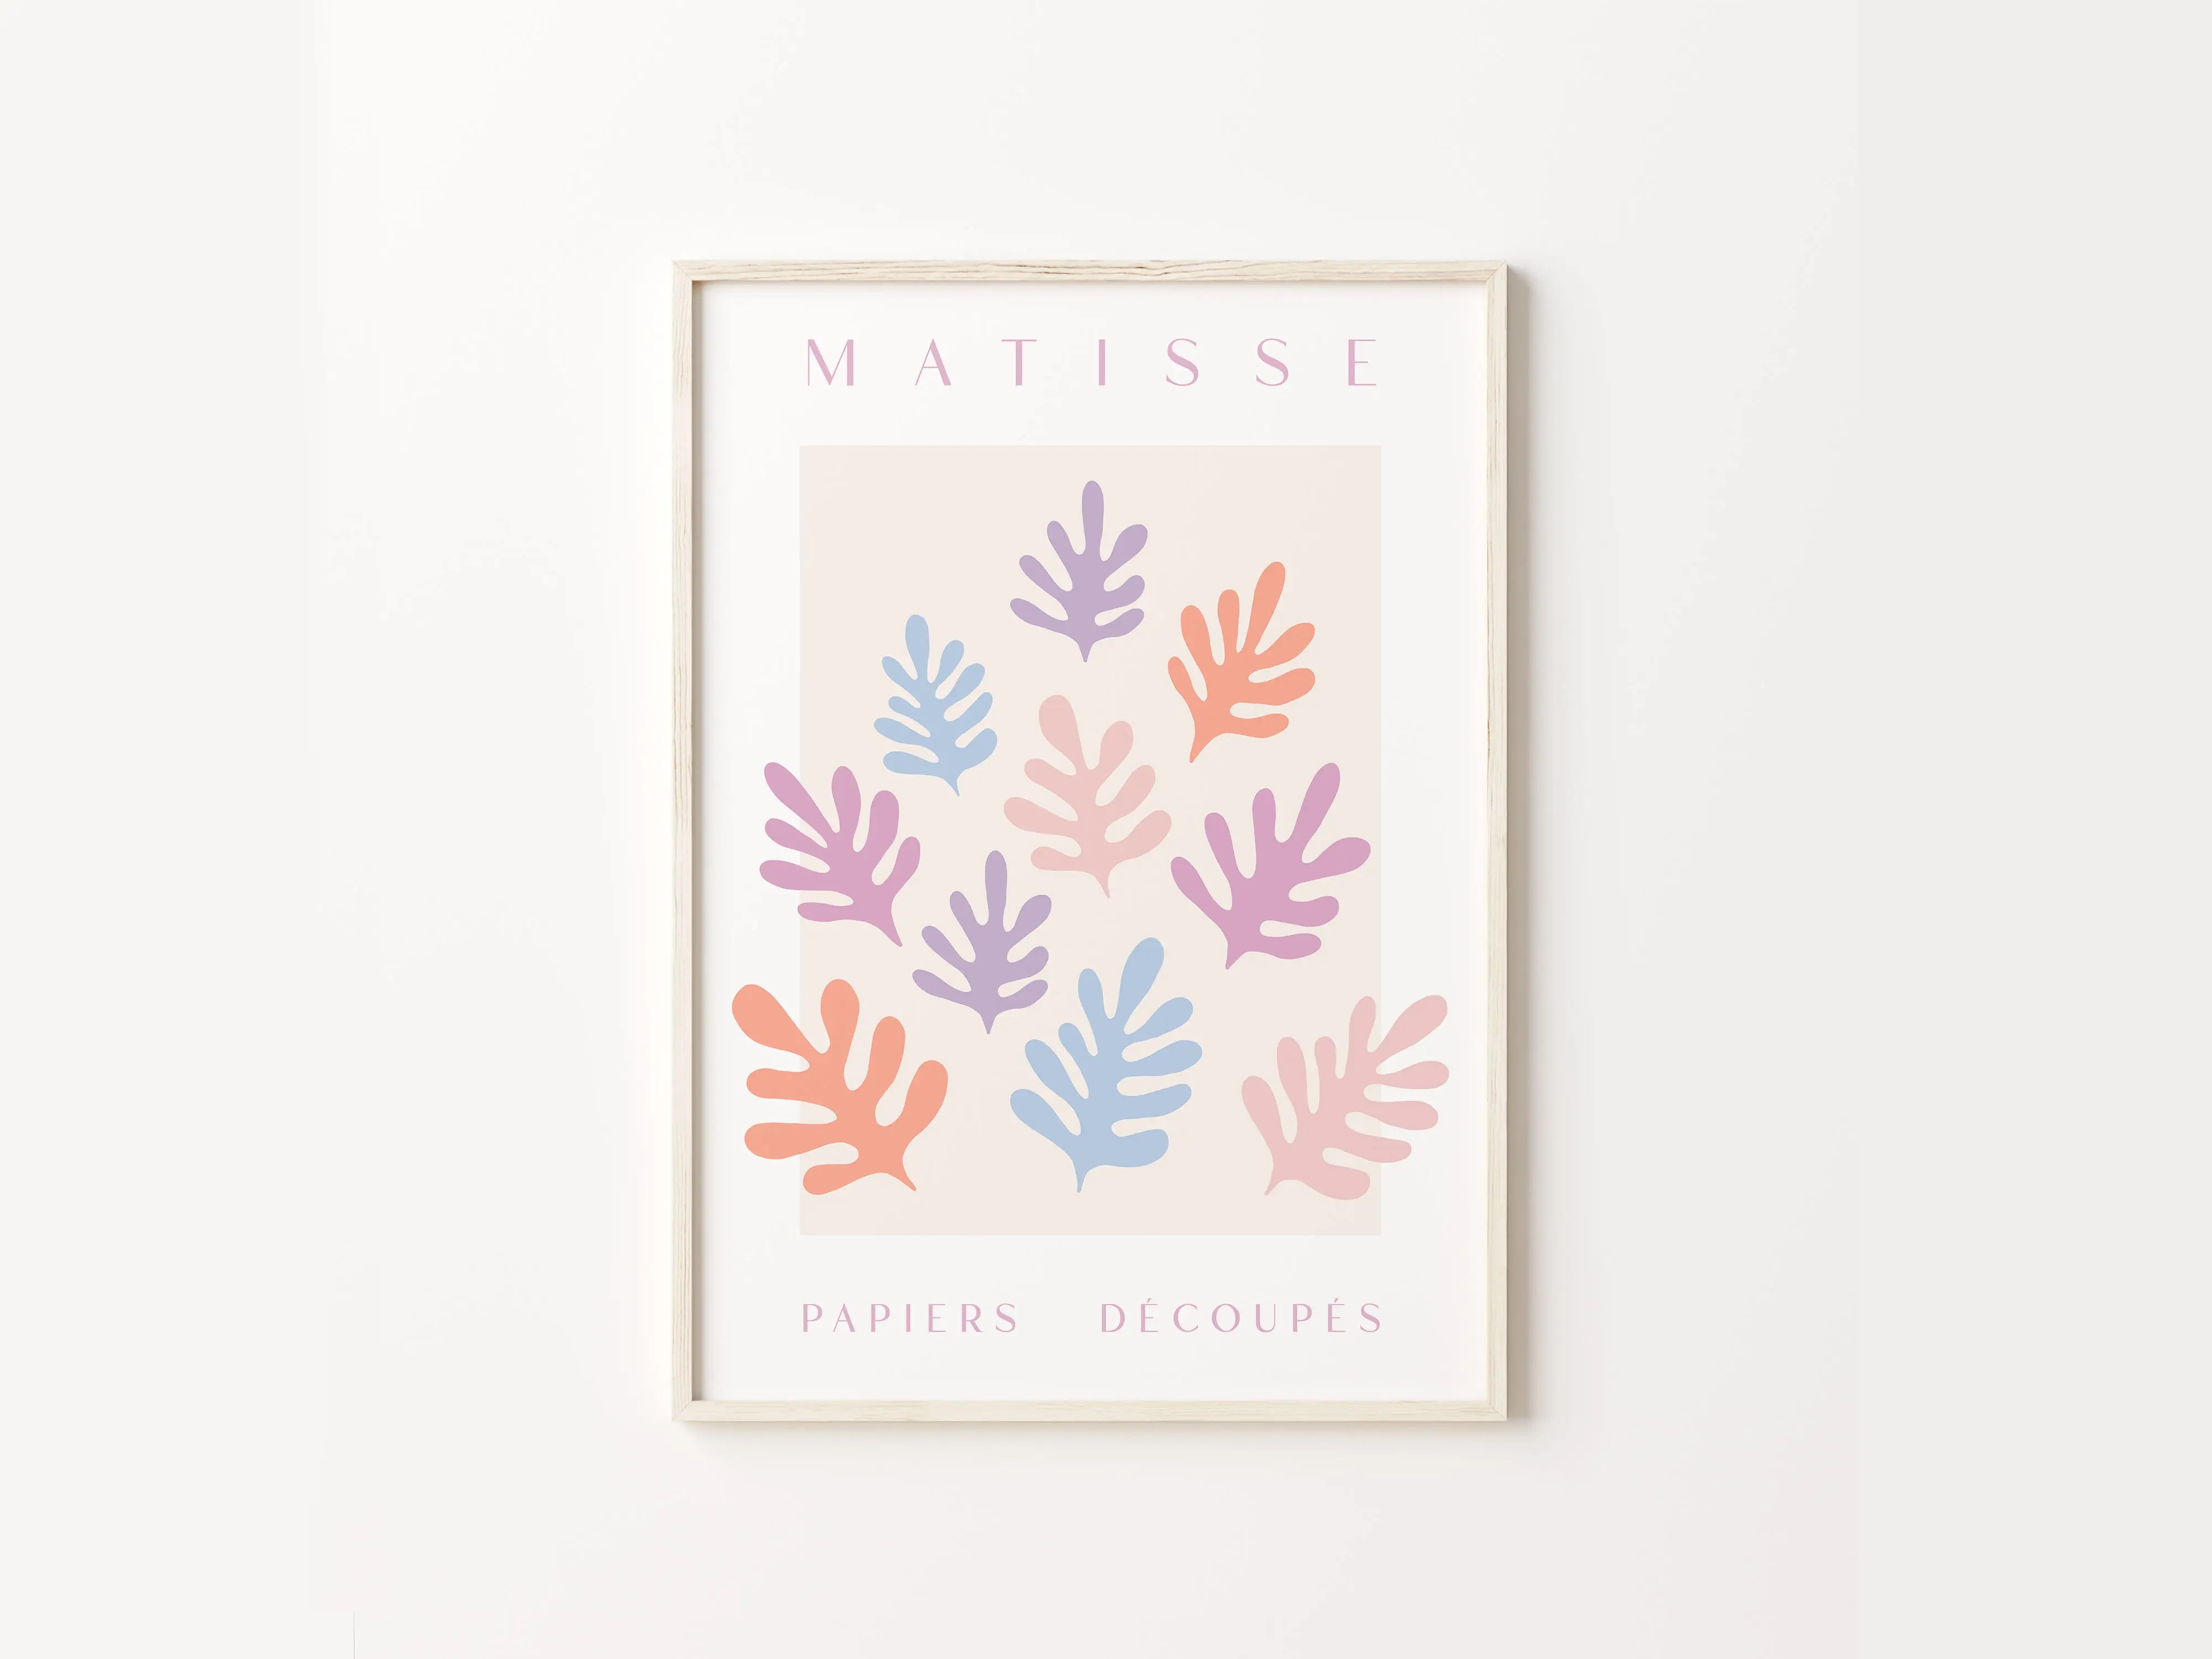 Affiche "Matisse inspired"